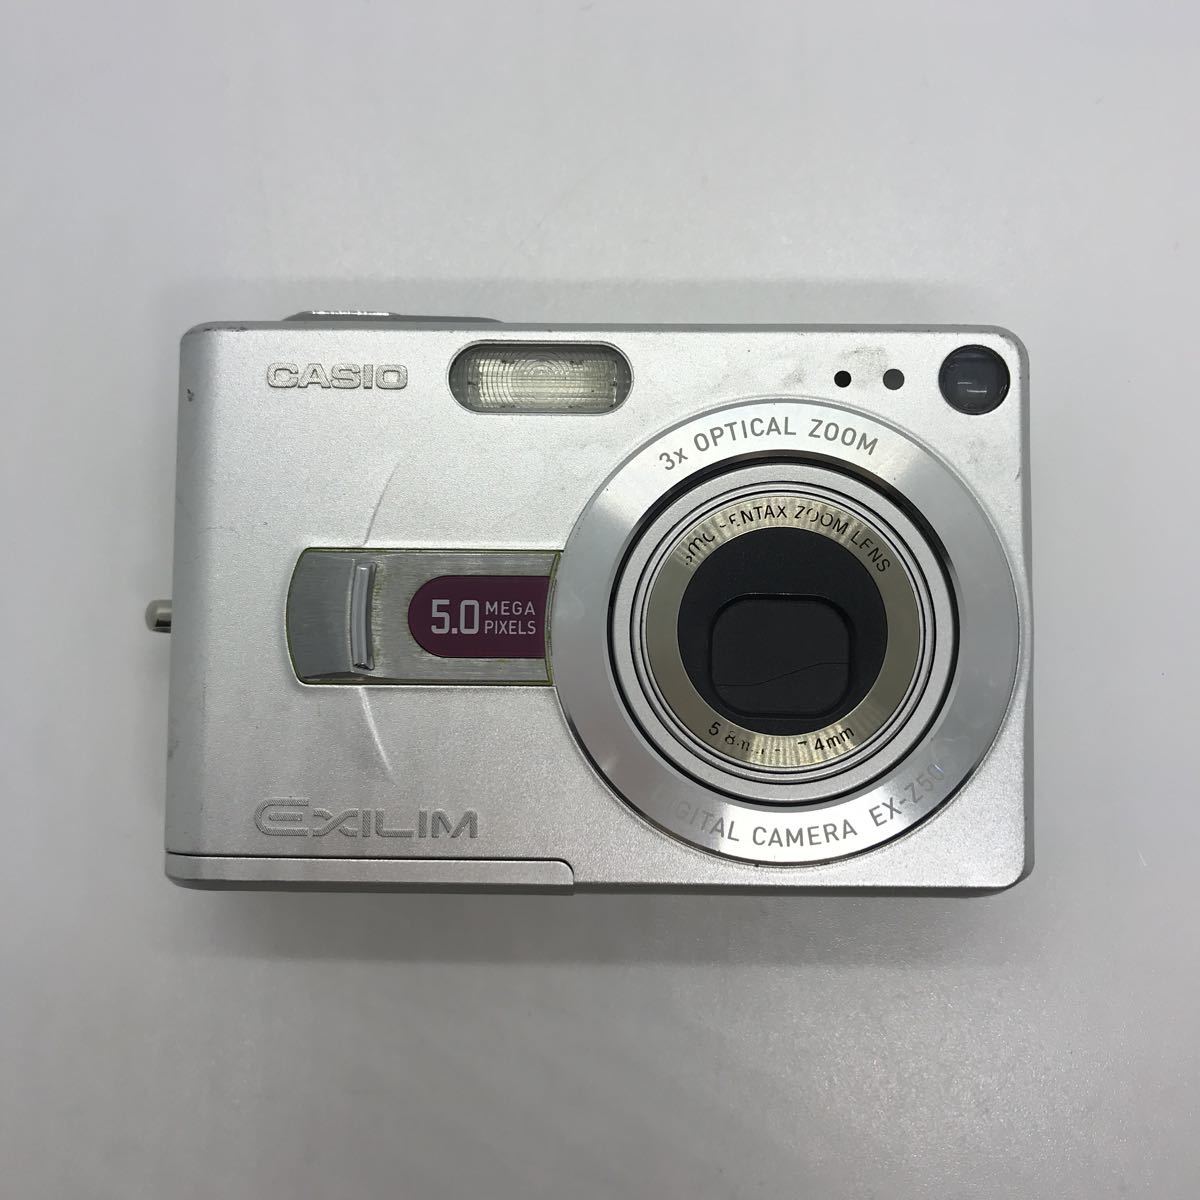 概ね美品 CASIO EXLIM EX-Z50 デジタルカメラ デジカメ c67b307tn_画像4